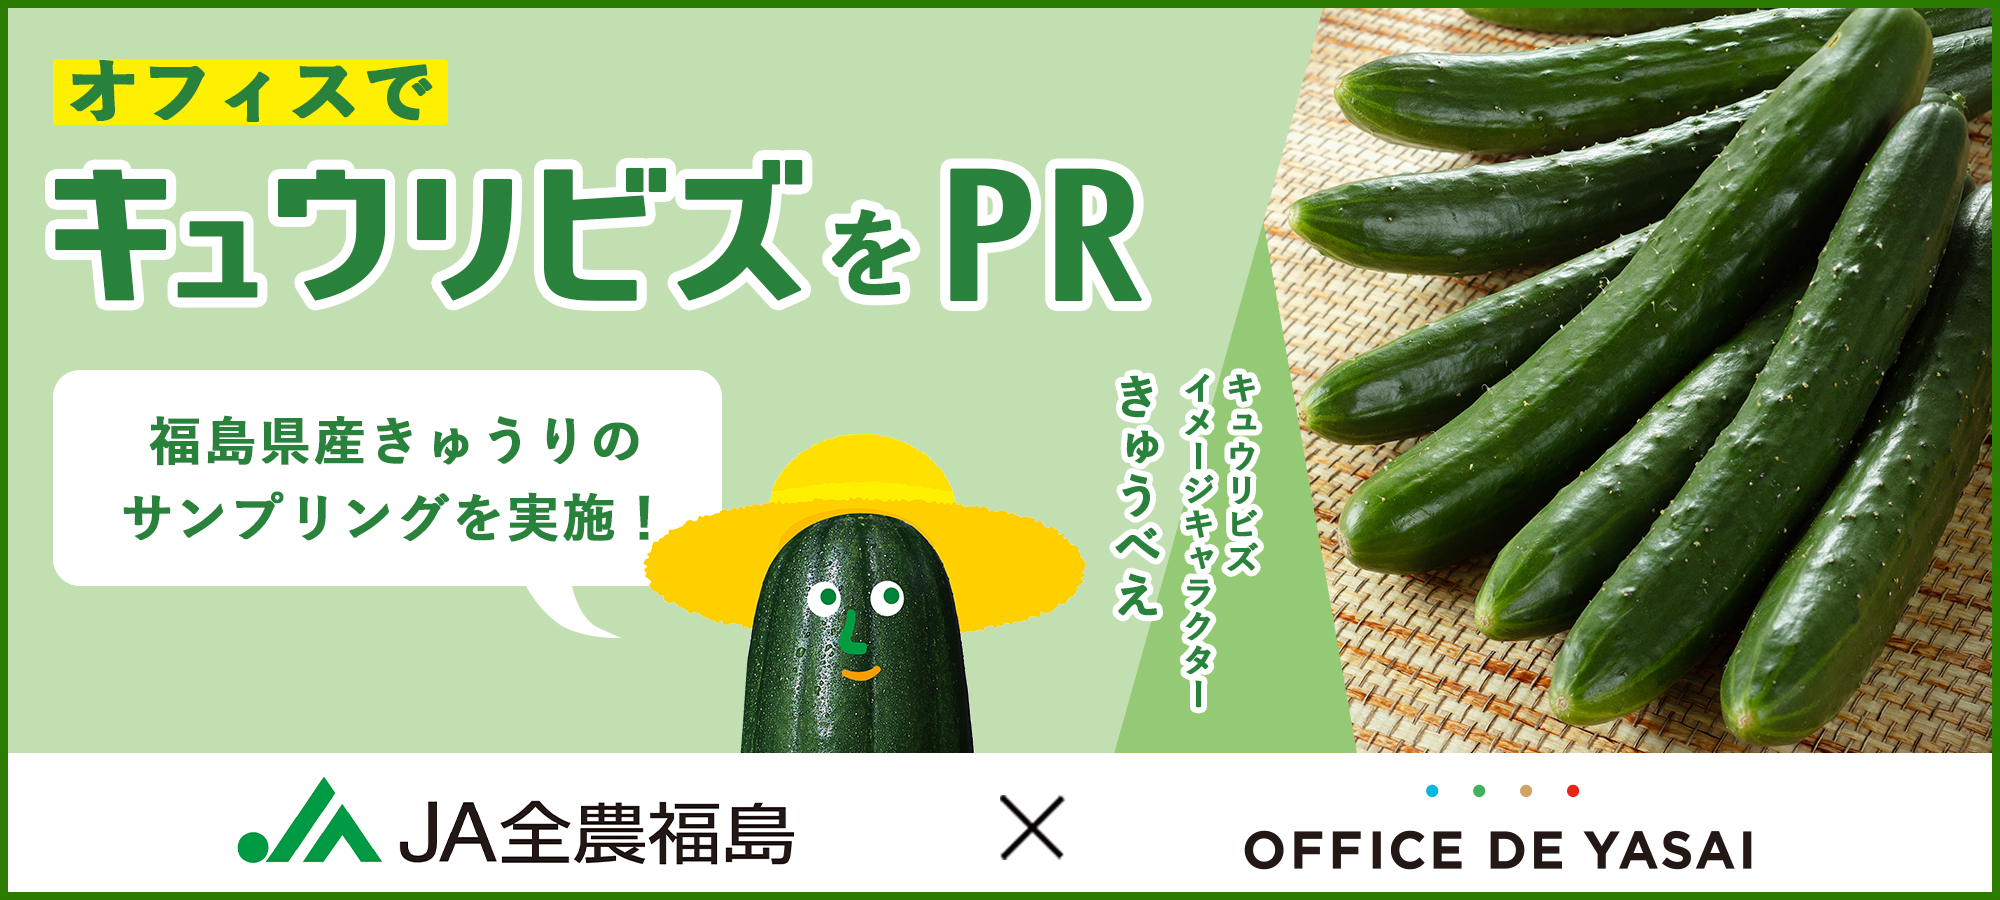 Ja全農福島 Office De Yasai オフィスで福島県産きゅうりの冷蔵サンプリングを実施 オフィスワーカーに キュウリビズ をpr Newscast